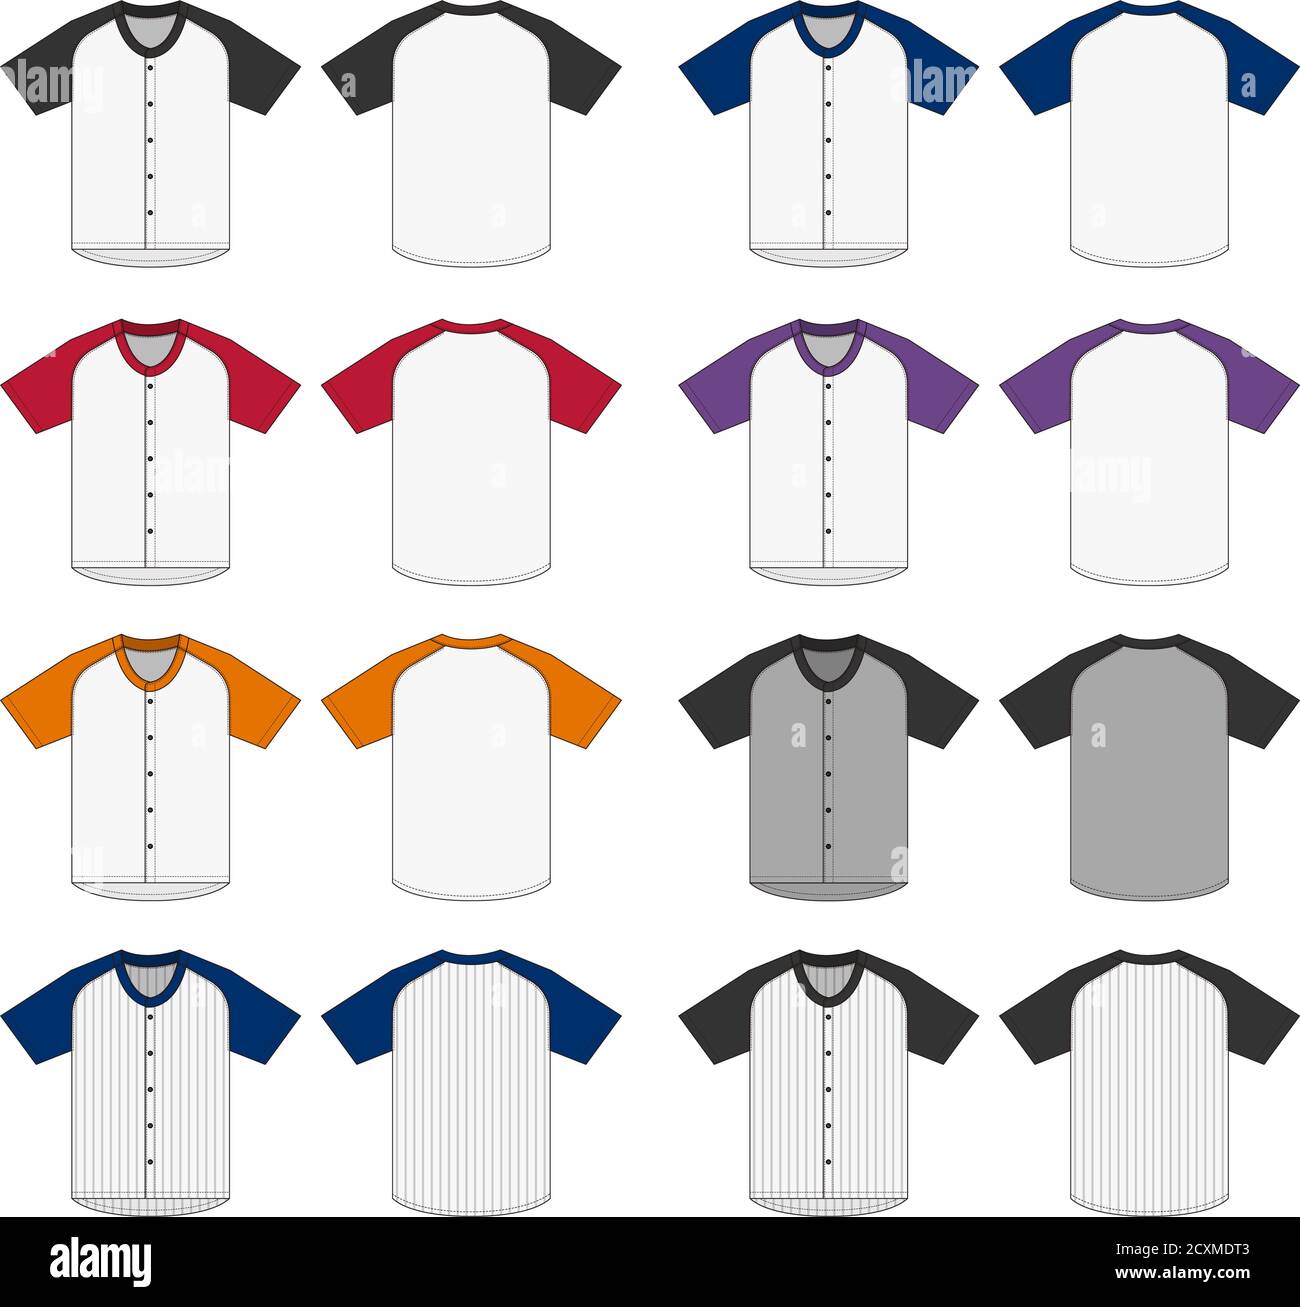 Chemise en jersey à manches courtes (chemise uniforme de baseball) ensemble d'illustrations vectorielles Illustration de Vecteur